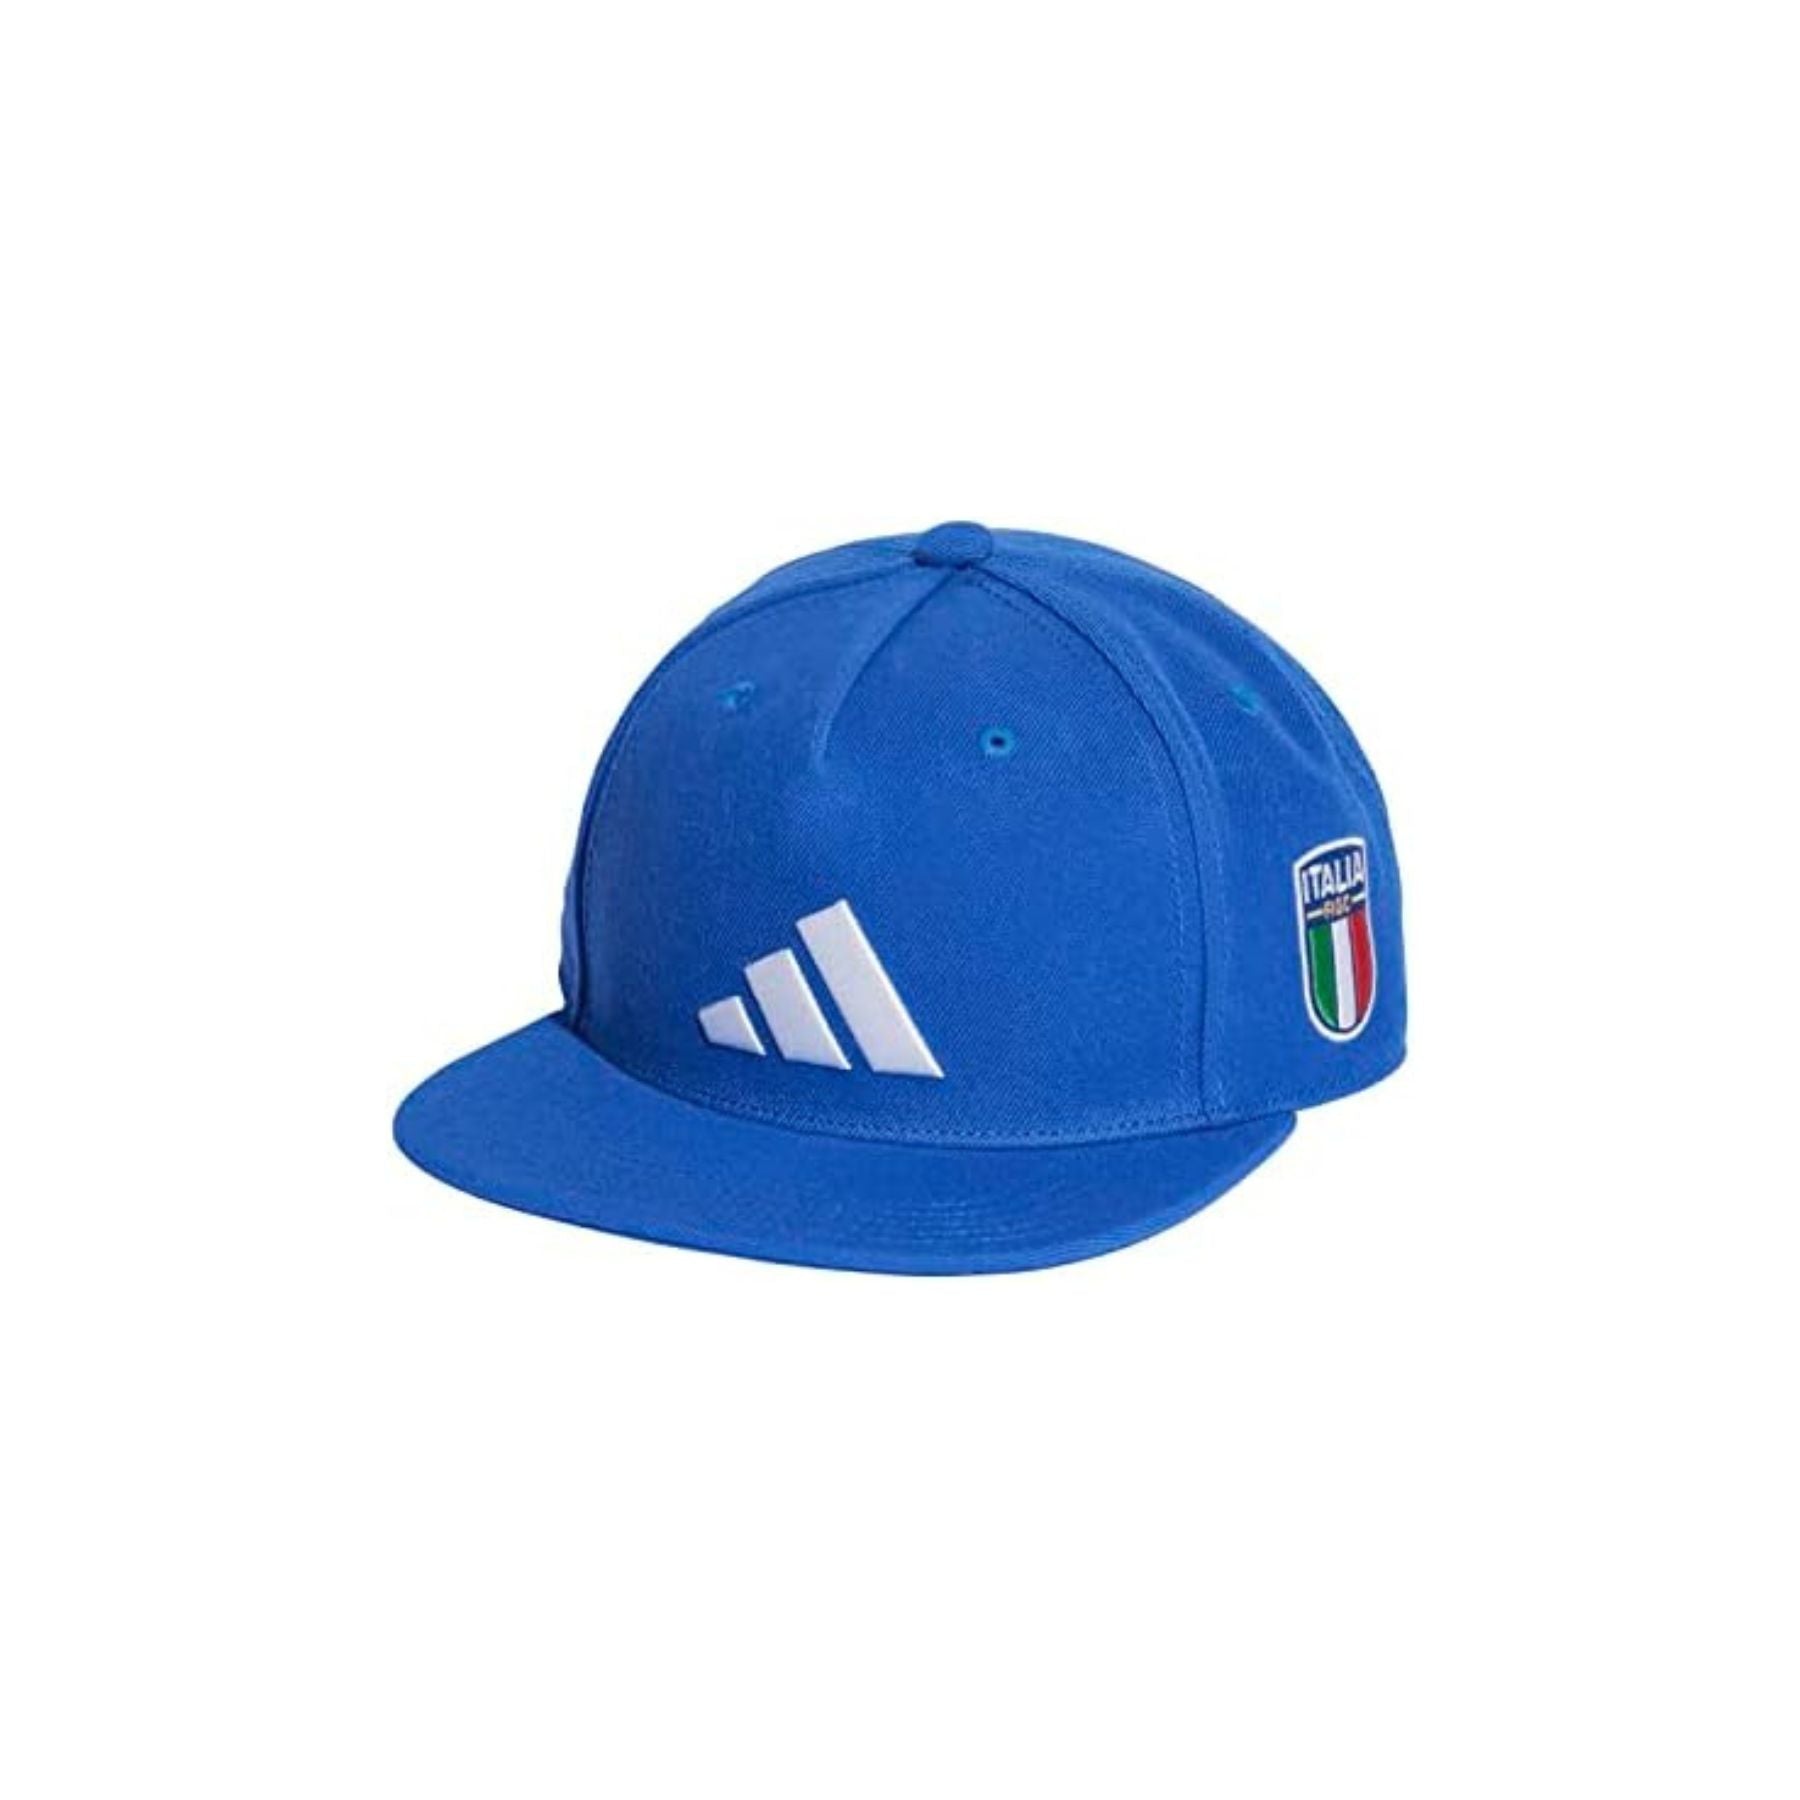 ADIDAS FIGC SB CAP